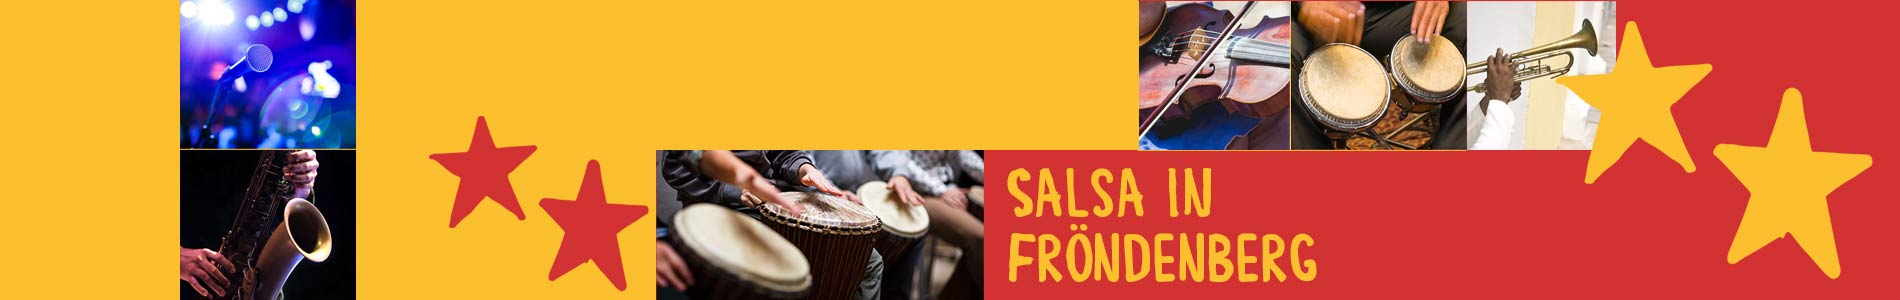 Salsa in Fröndenberg – Salsa lernen und tanzen, Tanzkurse, Partys, Veranstaltungen